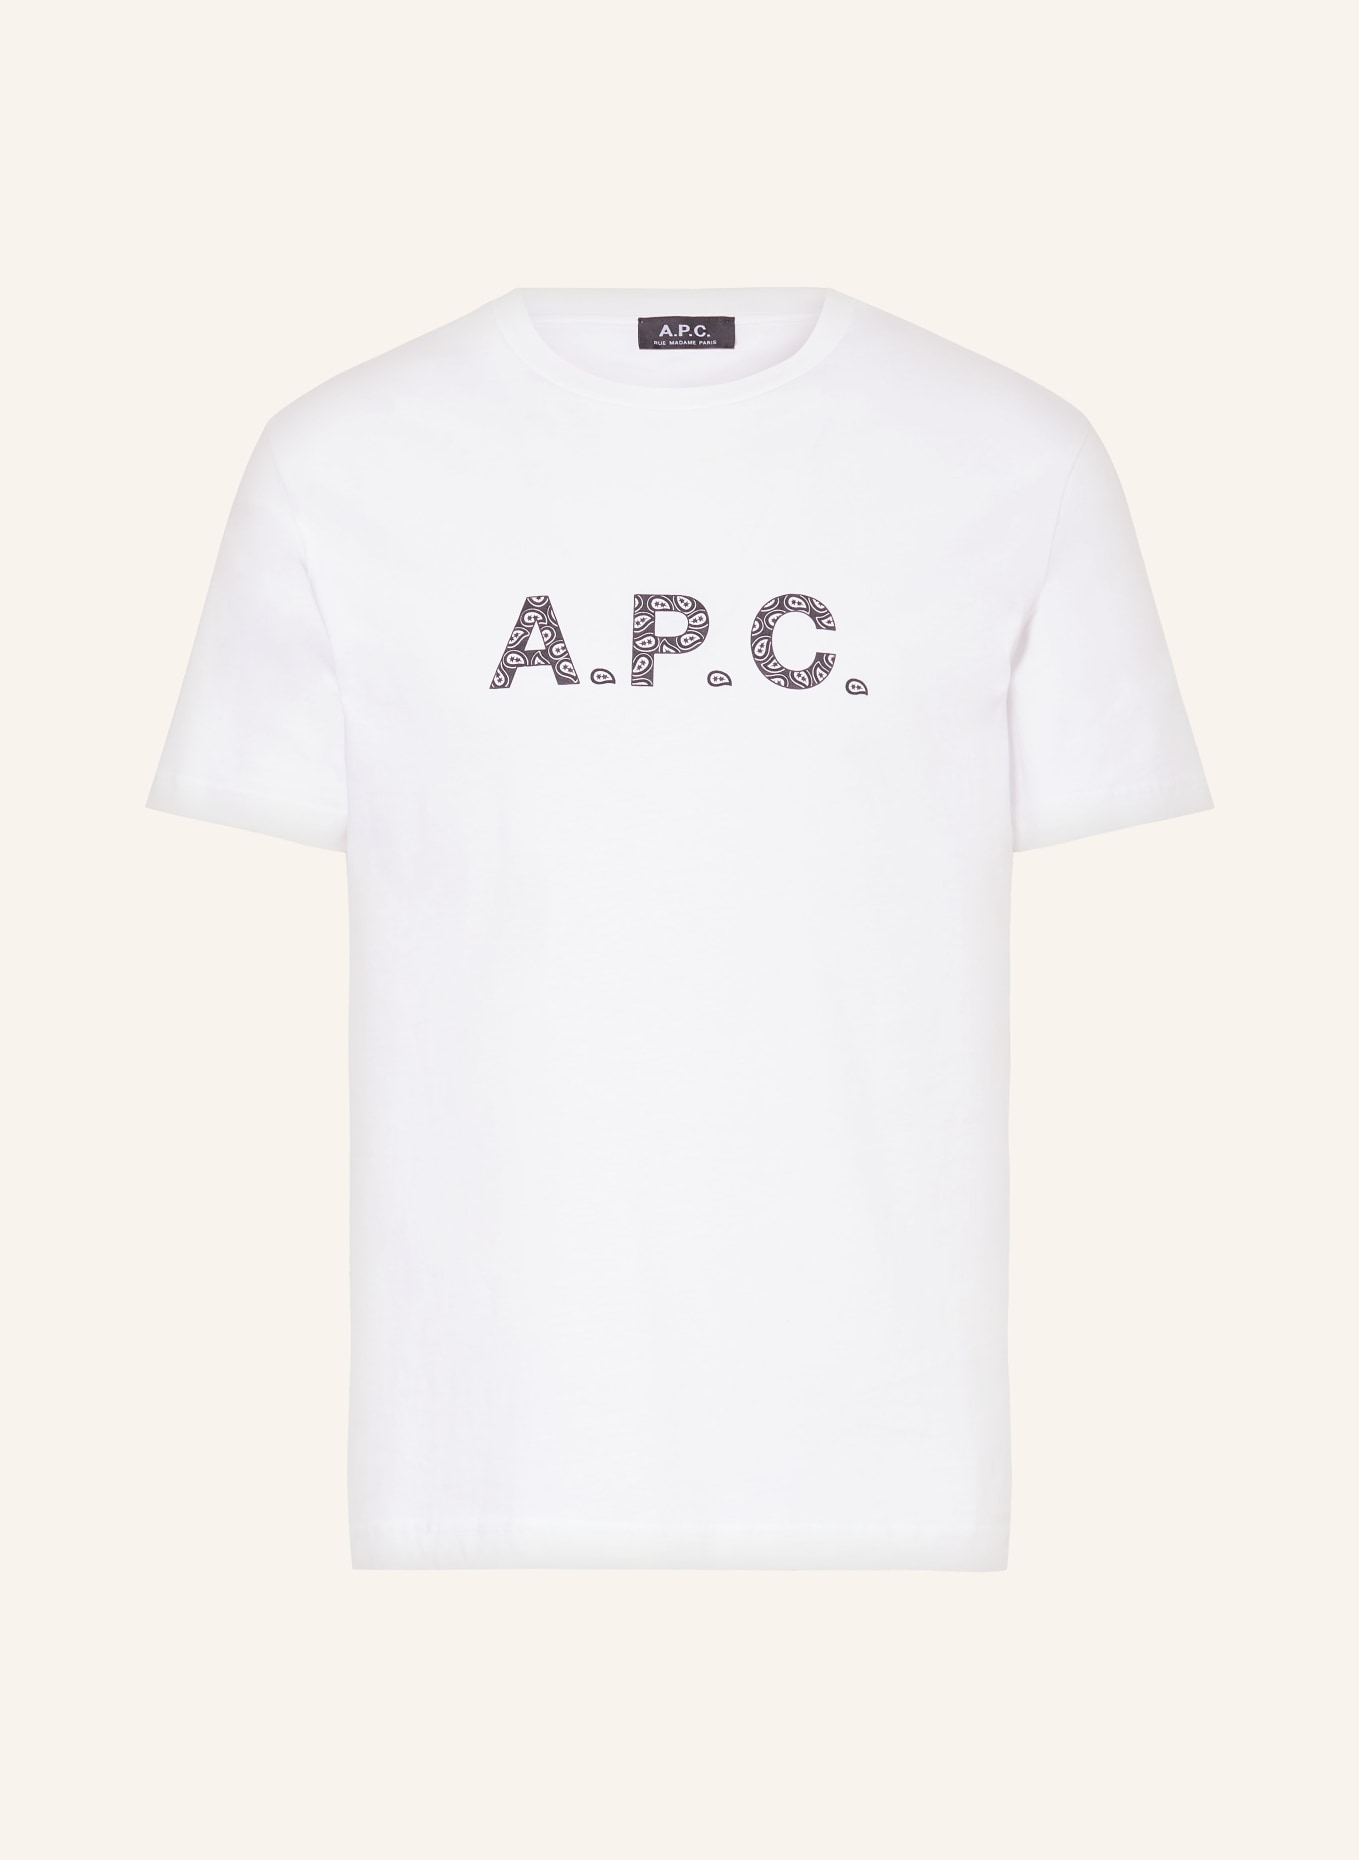 A.P.C. T-shirt JAMES, Color: WHITE/ BLACK (Image 1)